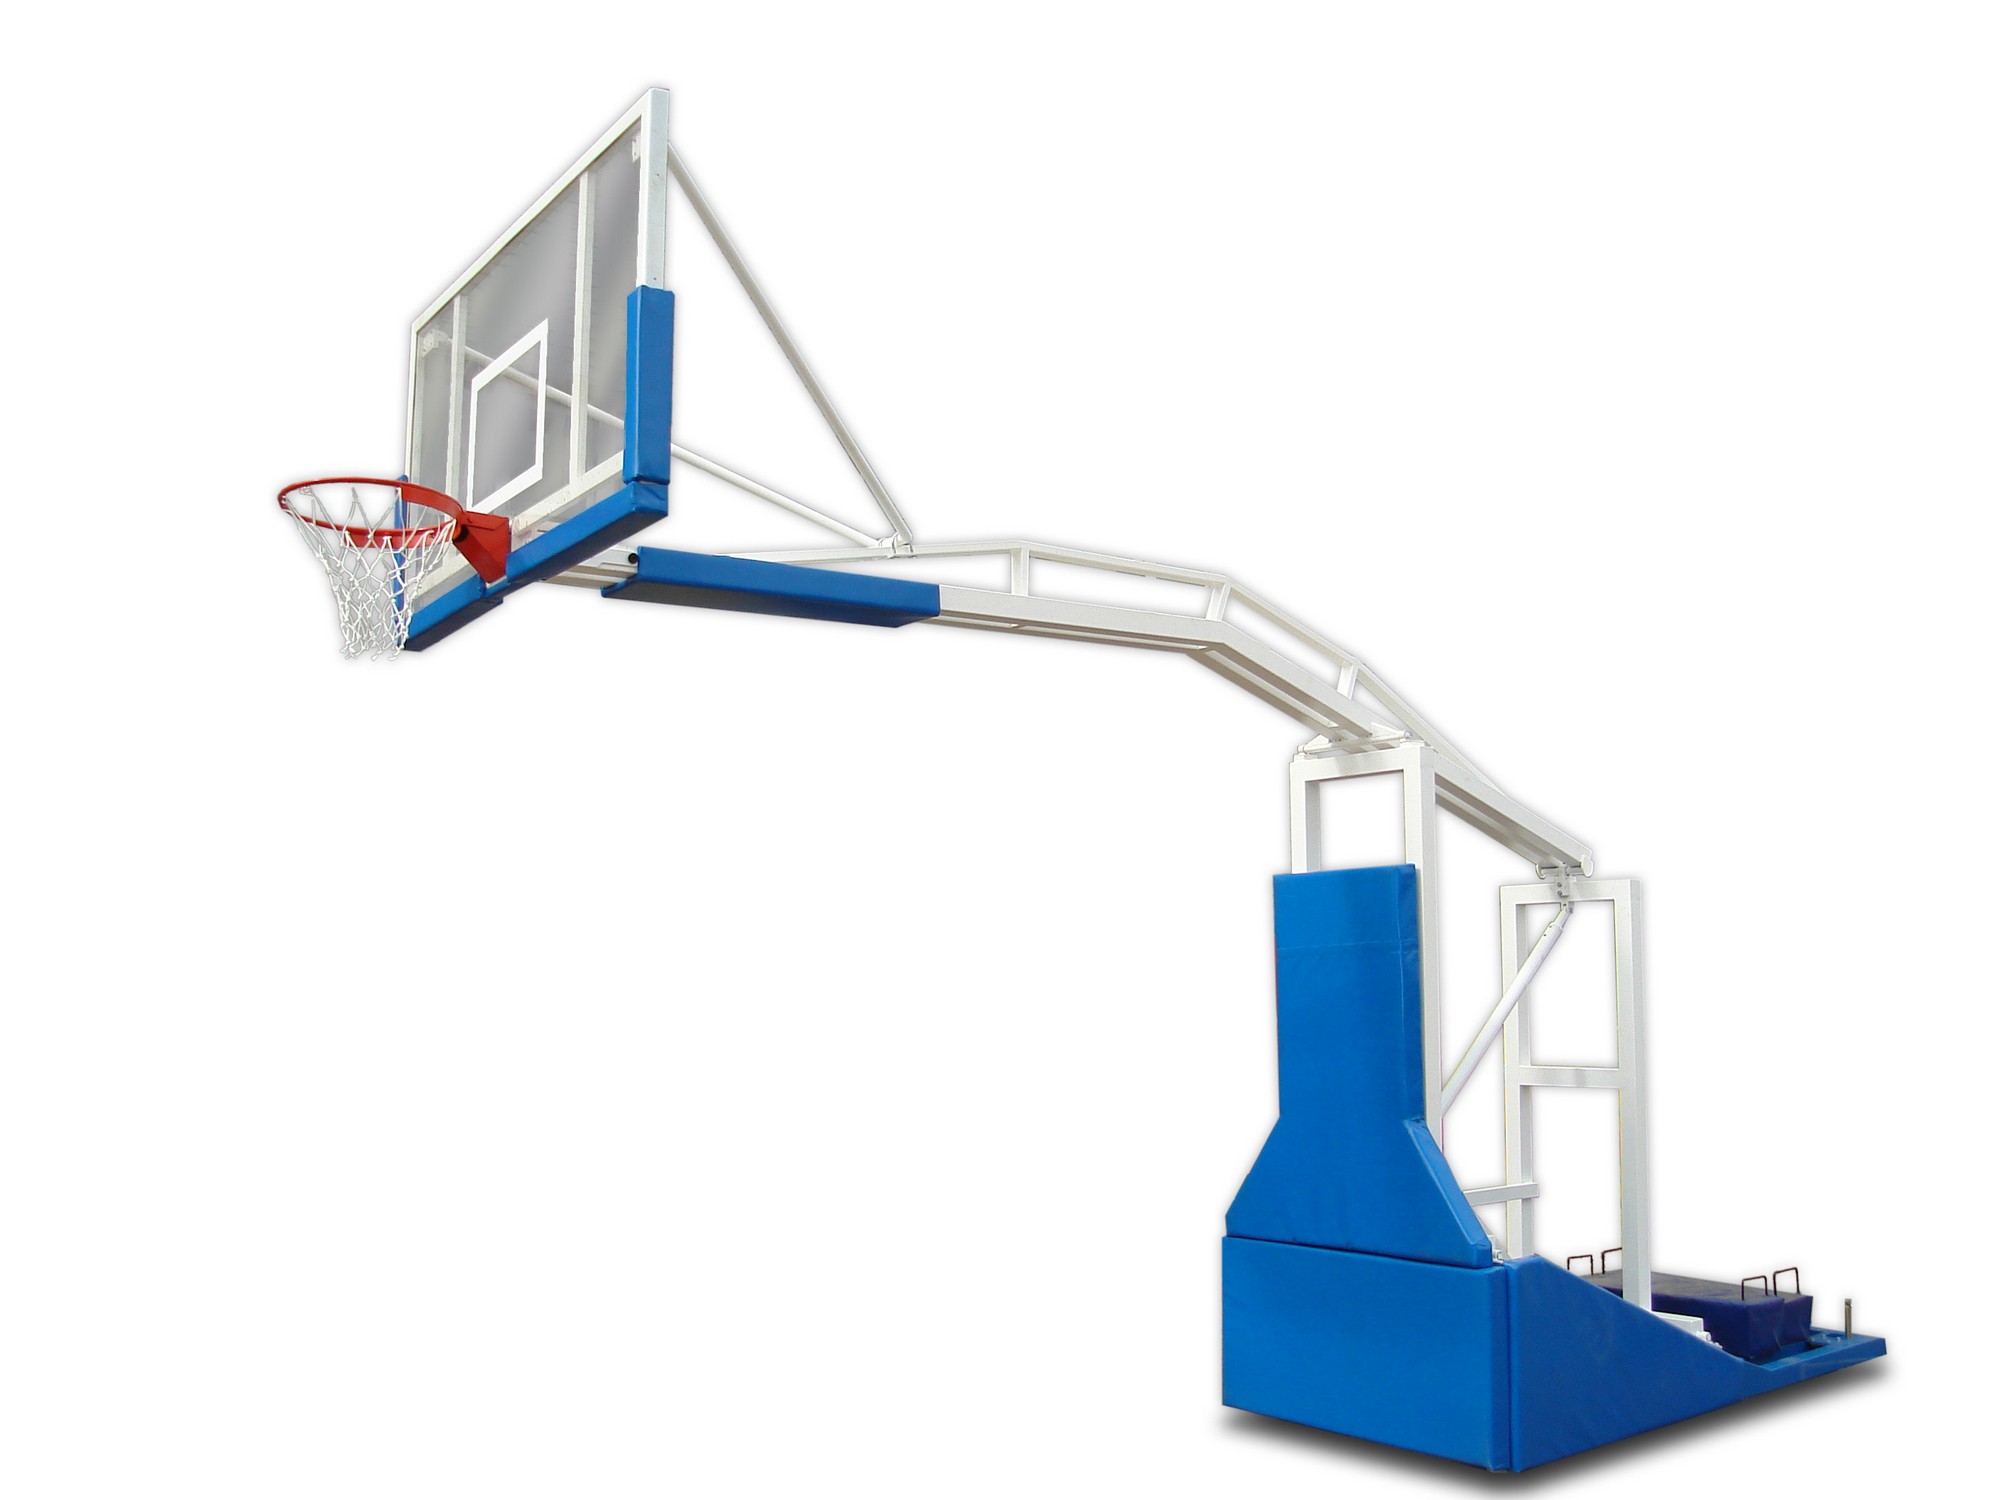 Стойка баскетбольная ФСИ мобильная складная, с выносом 3,25м, с электроподьемом стрелы, без противовесов 9107 2000_1500